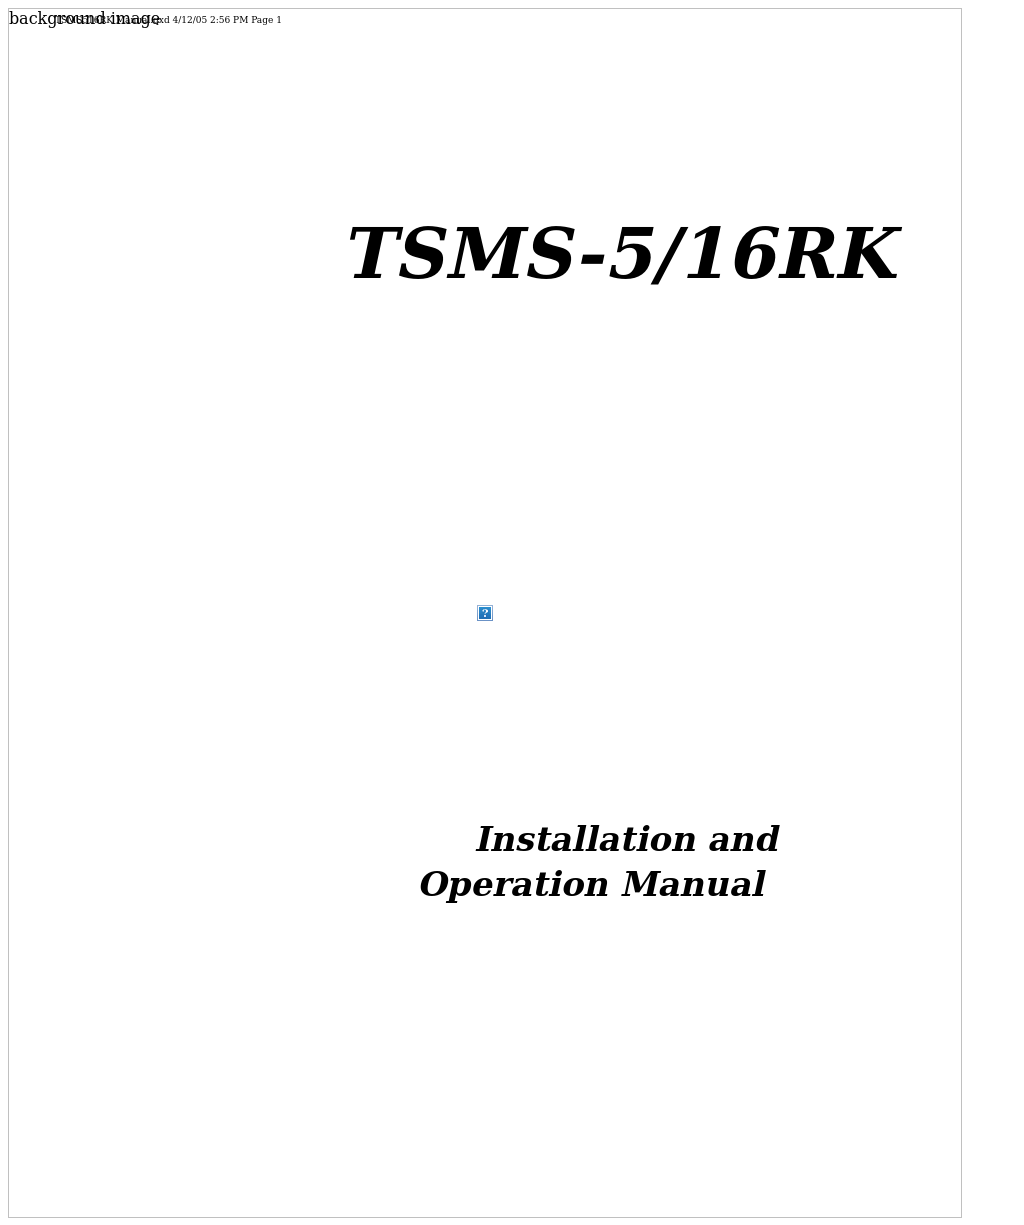 TSMS-5/16RK